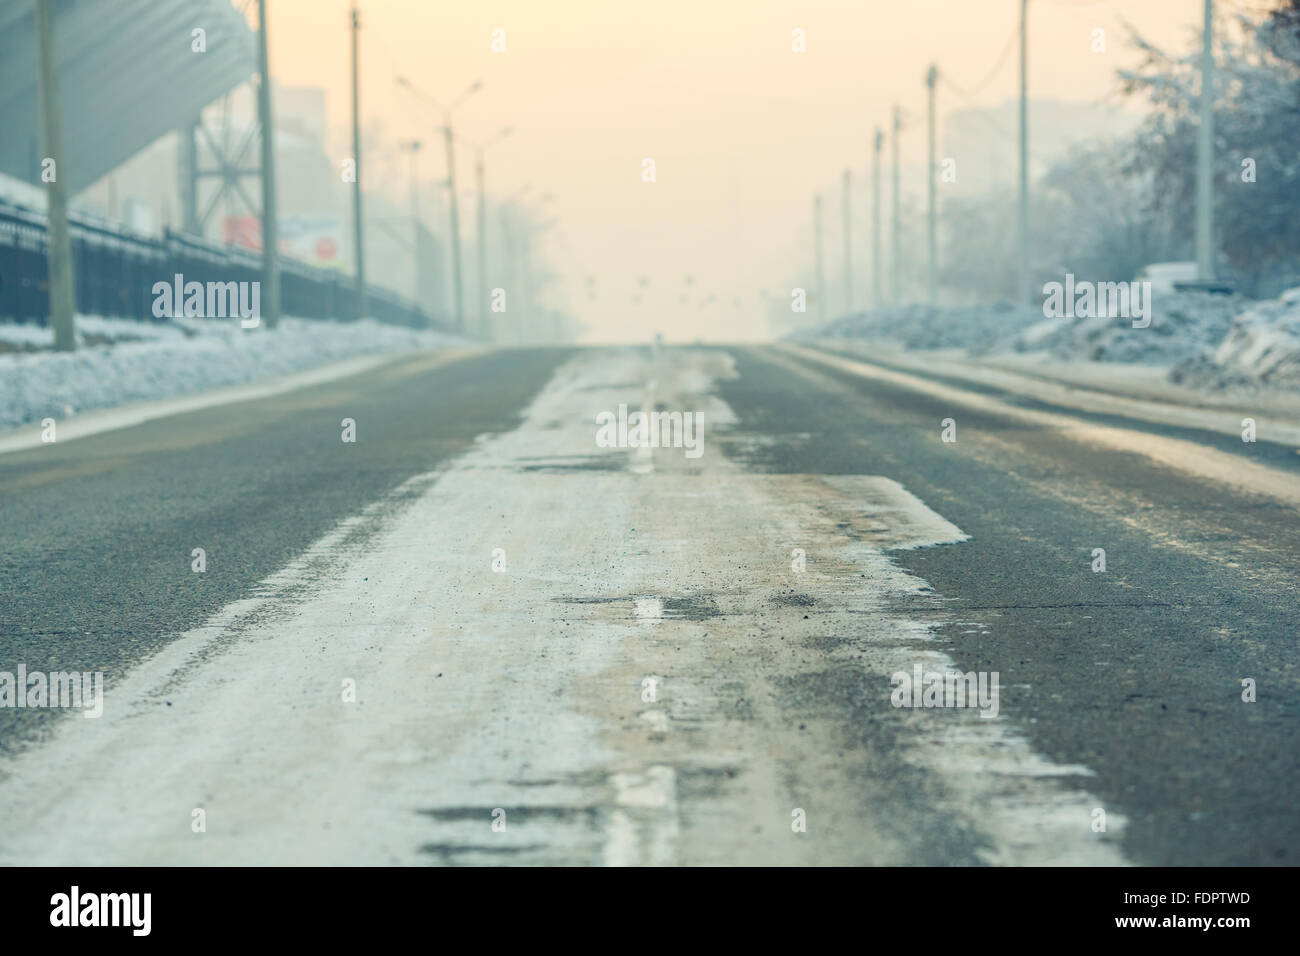 Los antecedentes, la carretera en una calle vacía en la ciudad, día de invierno frío, con nieve y reactivos al atardecer, la perspectiva aérea. Postes de luz a lo largo de los bordes de la carretera. Foto de stock